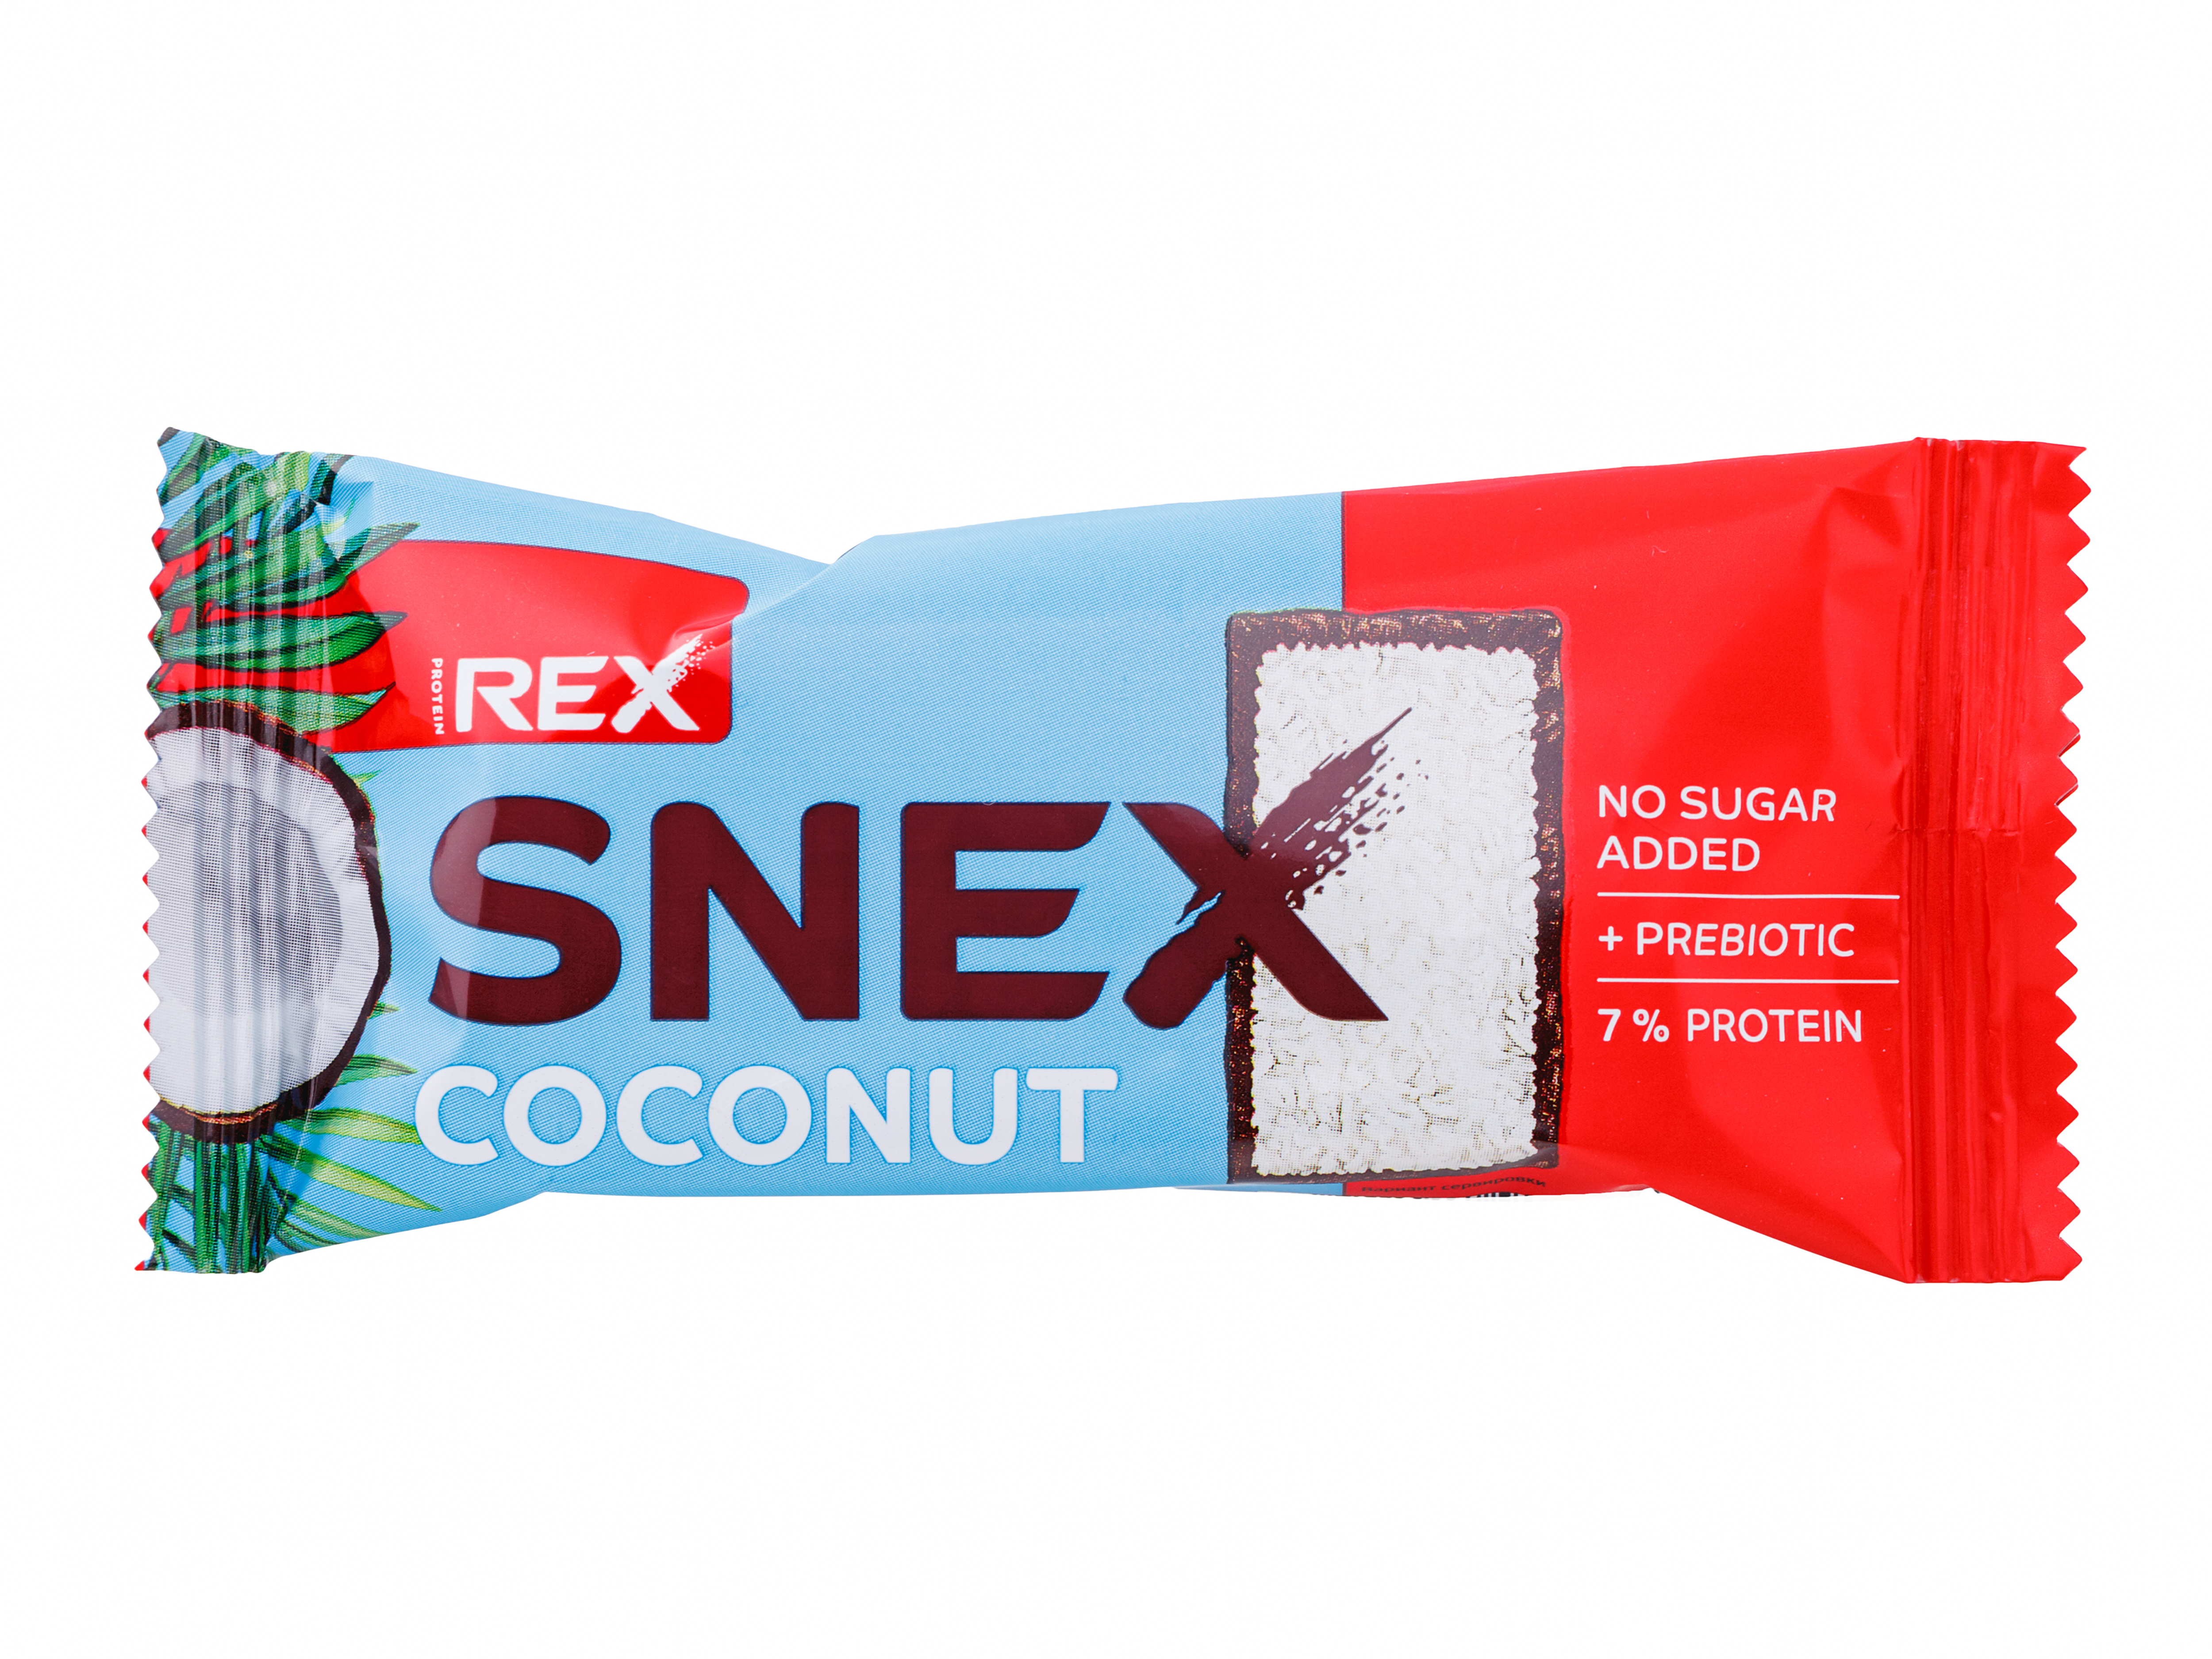 Snex Rex батончик. Батончик глазированный snex Кокос. Батончик глазированный snex карамель. Мини тортик Rex протеиновый с кокосом.